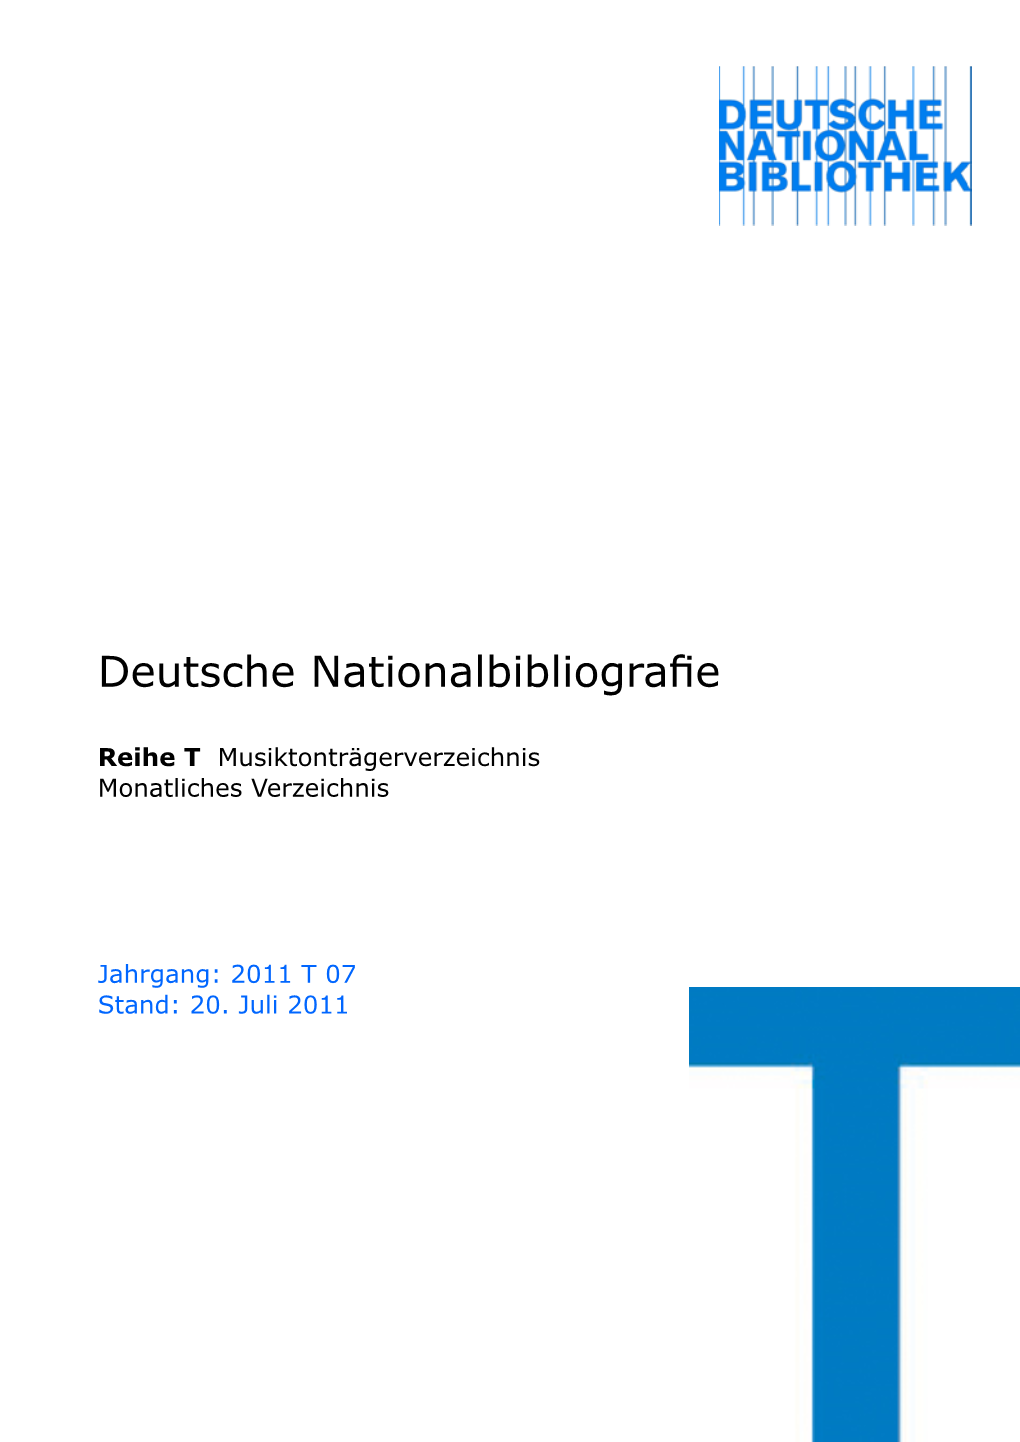 Deutsche Nationalbibliografie 2011 T 07